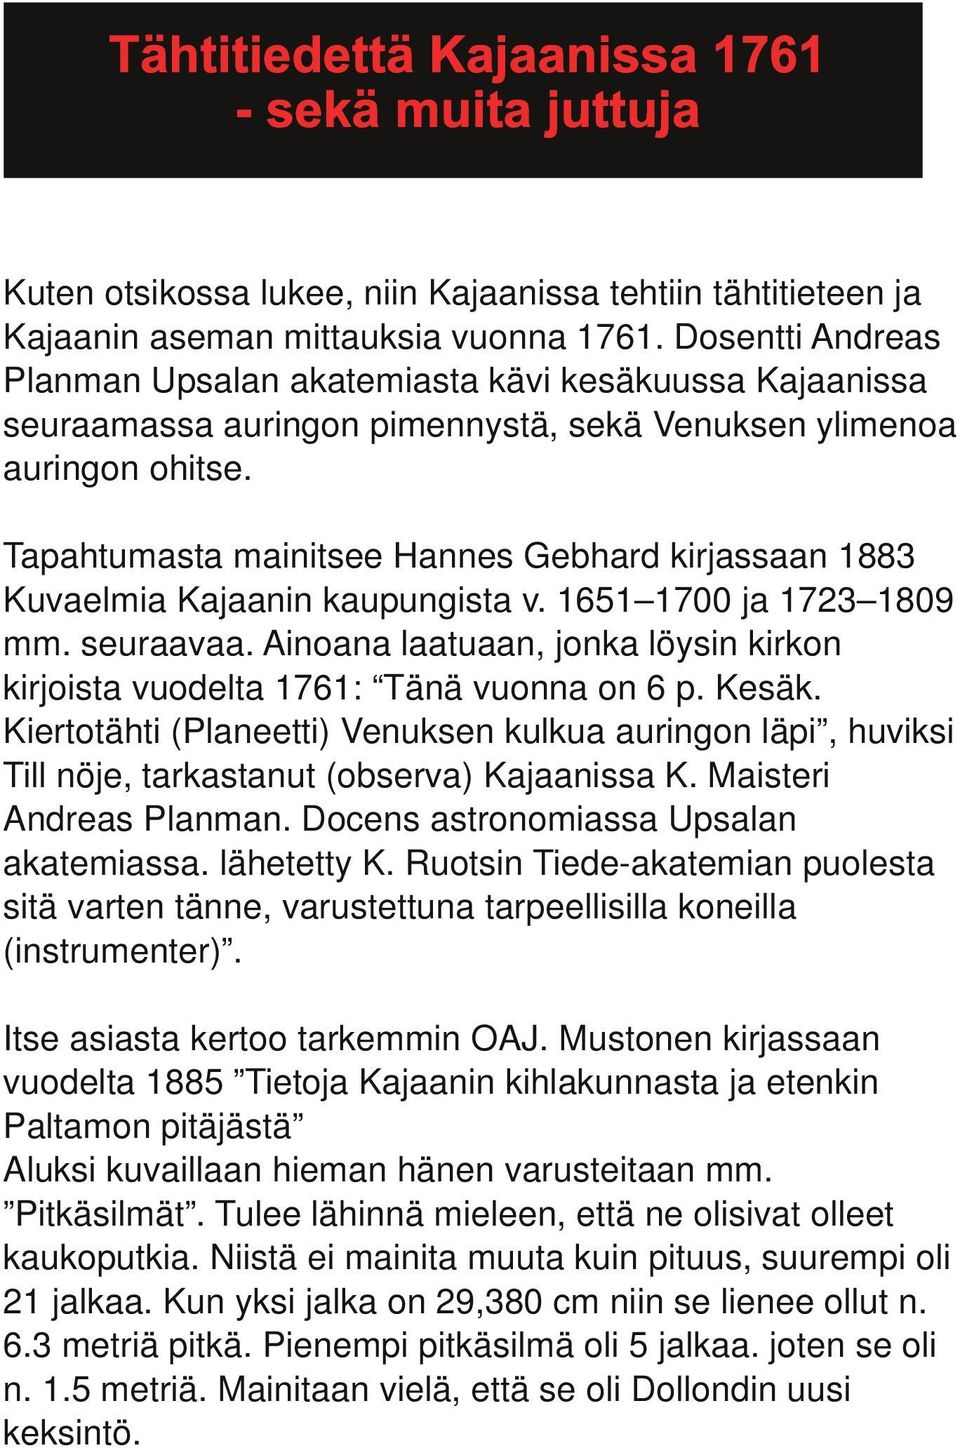 Tapahtumasta mainitsee Hannes Gebhard kirjassaan 1883 Kuvaelmia Kajaanin kaupungista v. 1651 1700 ja 1723 1809 mm. seuraavaa.